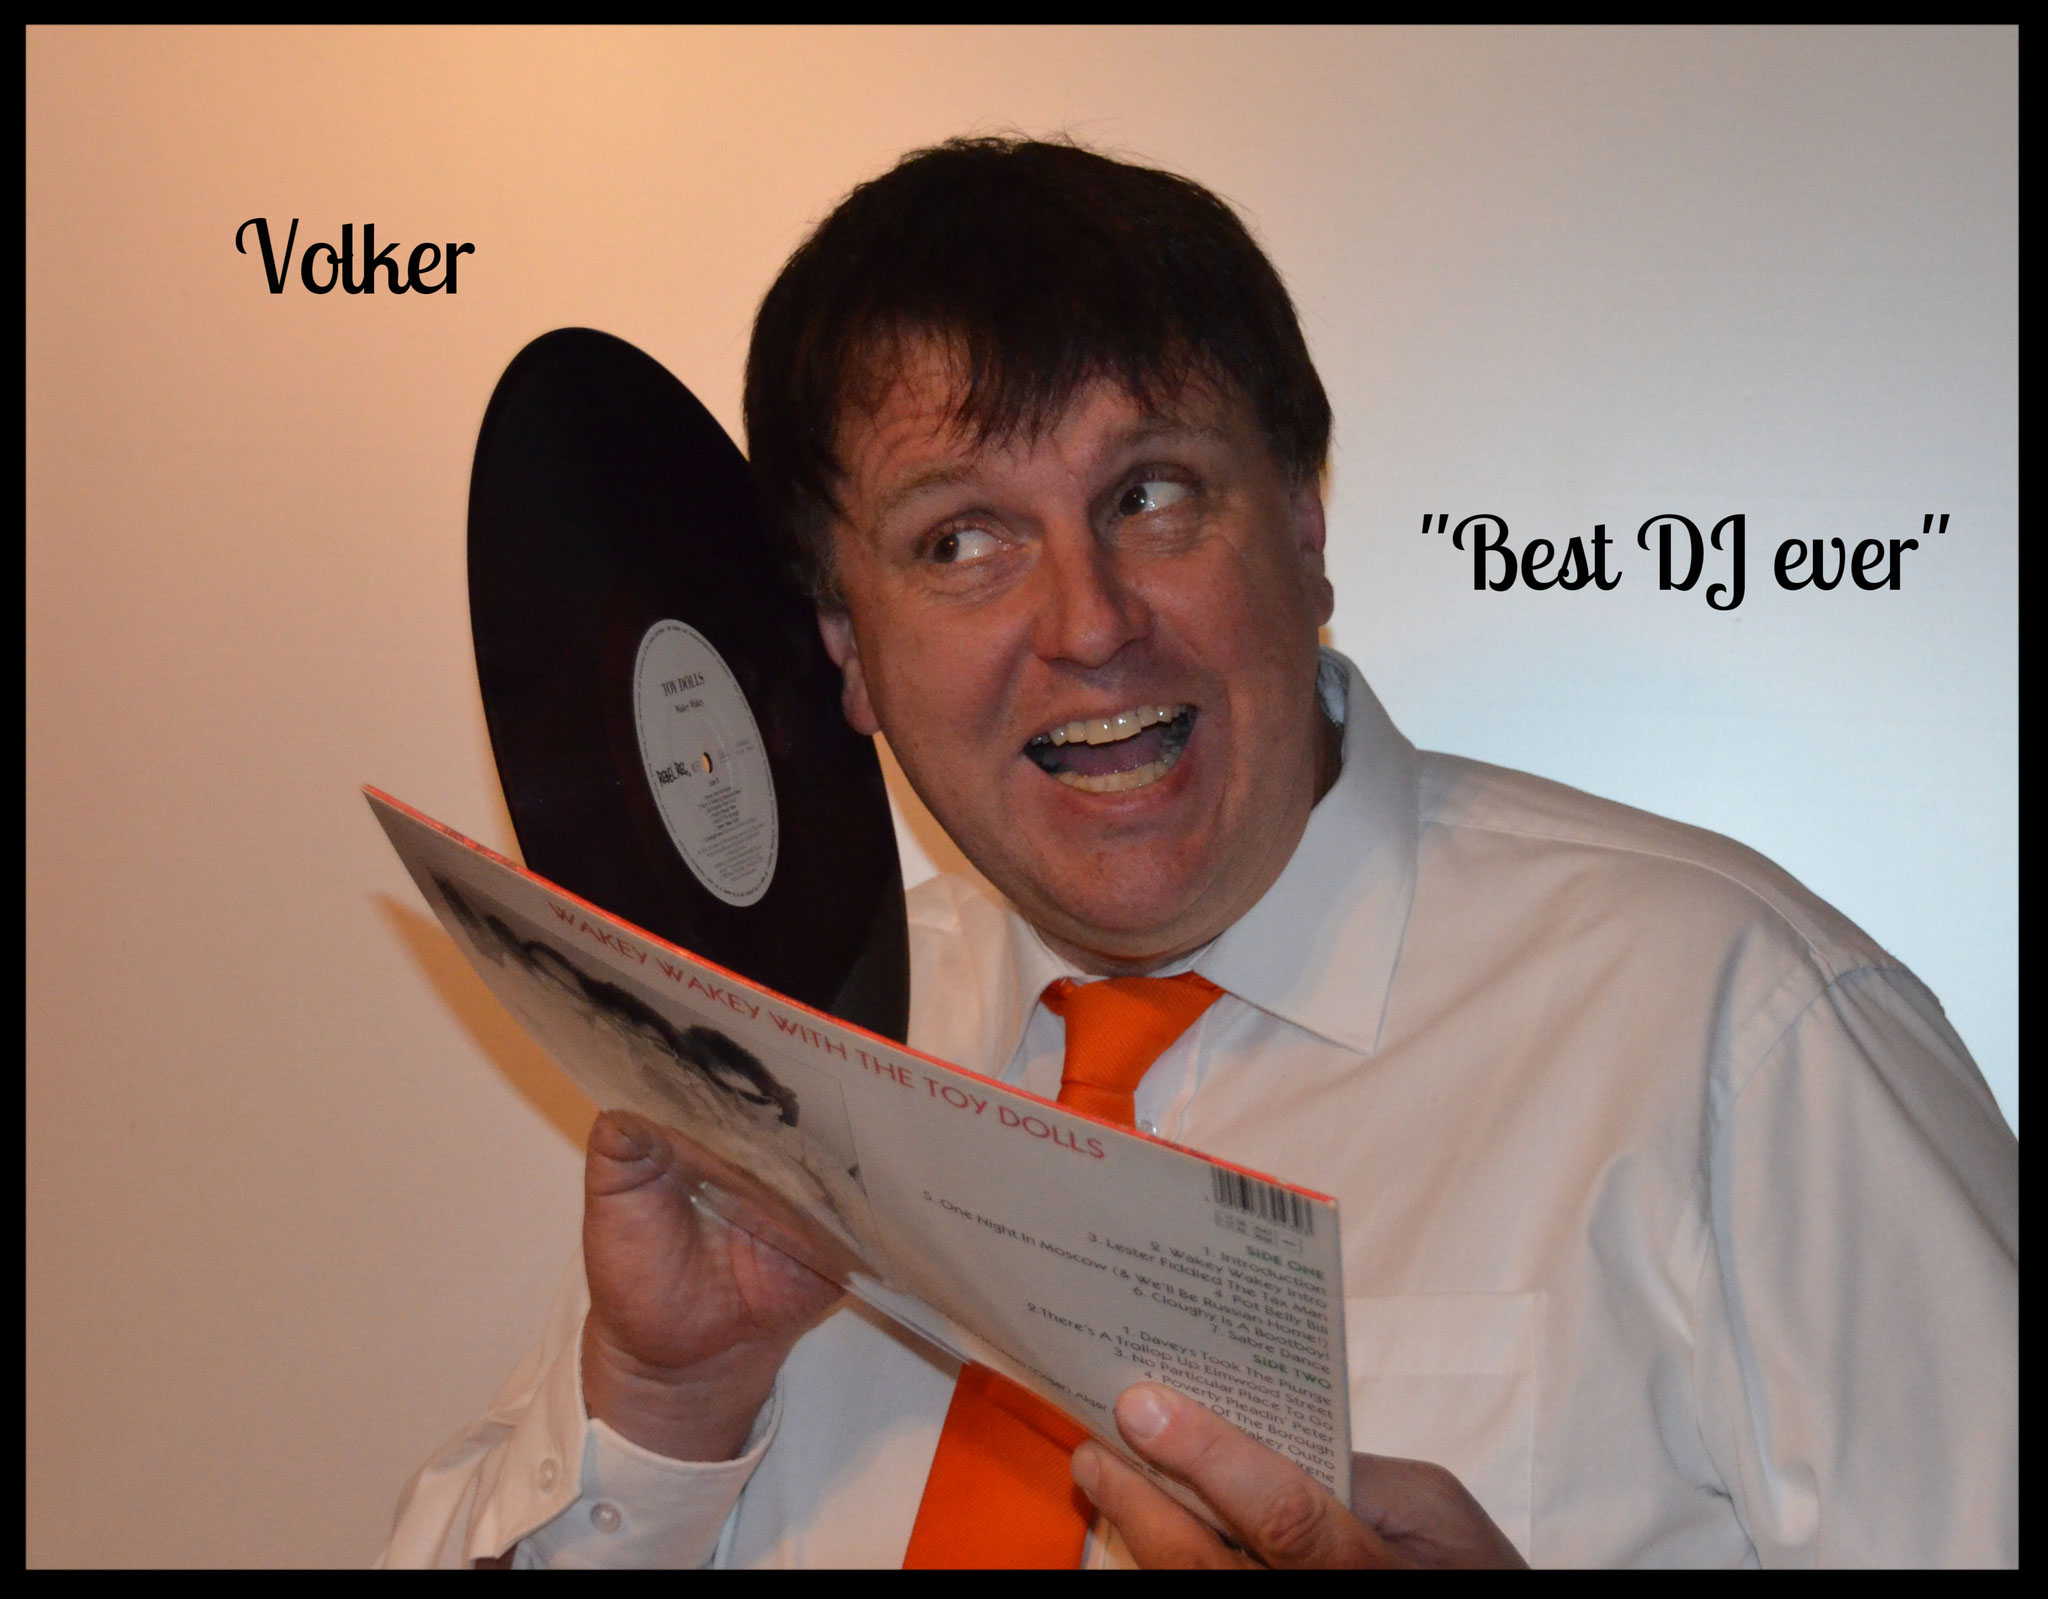 Obwohl Volker selber singen kann wie ein junger Gott, legt er am Wochenende in Clubs Platten auf.